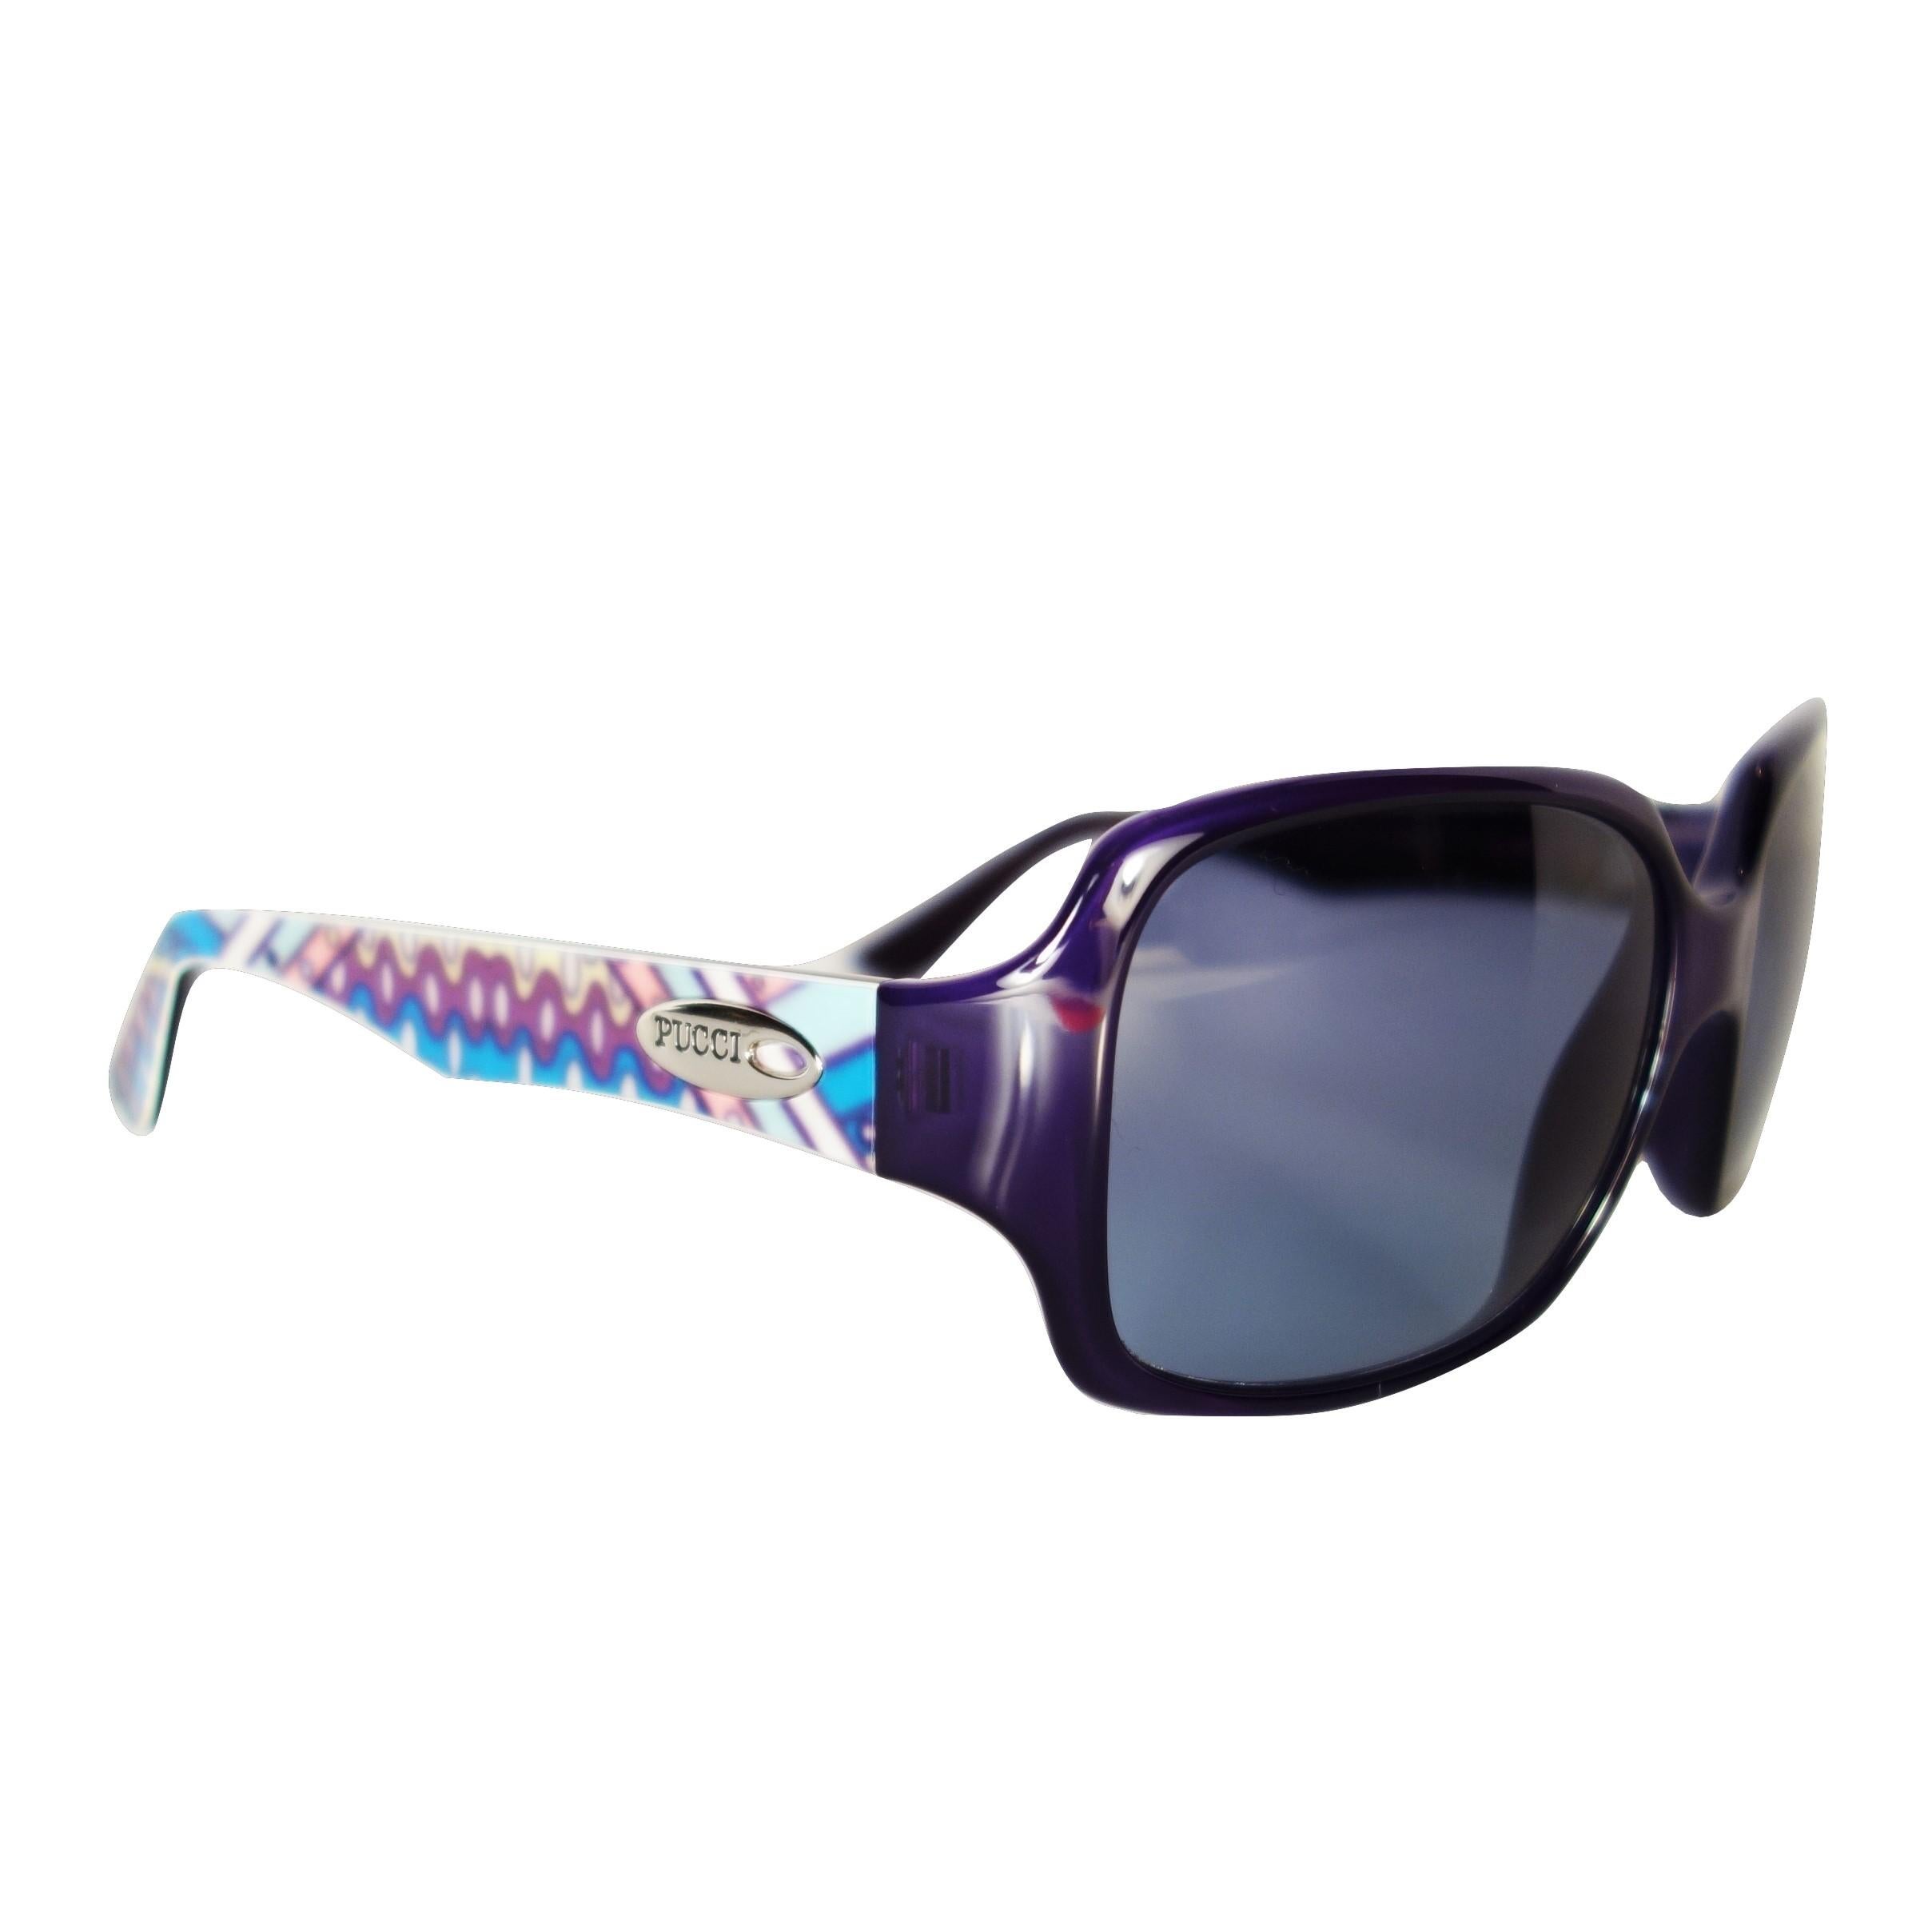 New Emilio Pucci Purple Logo Sunglasses  With Case & Box 3